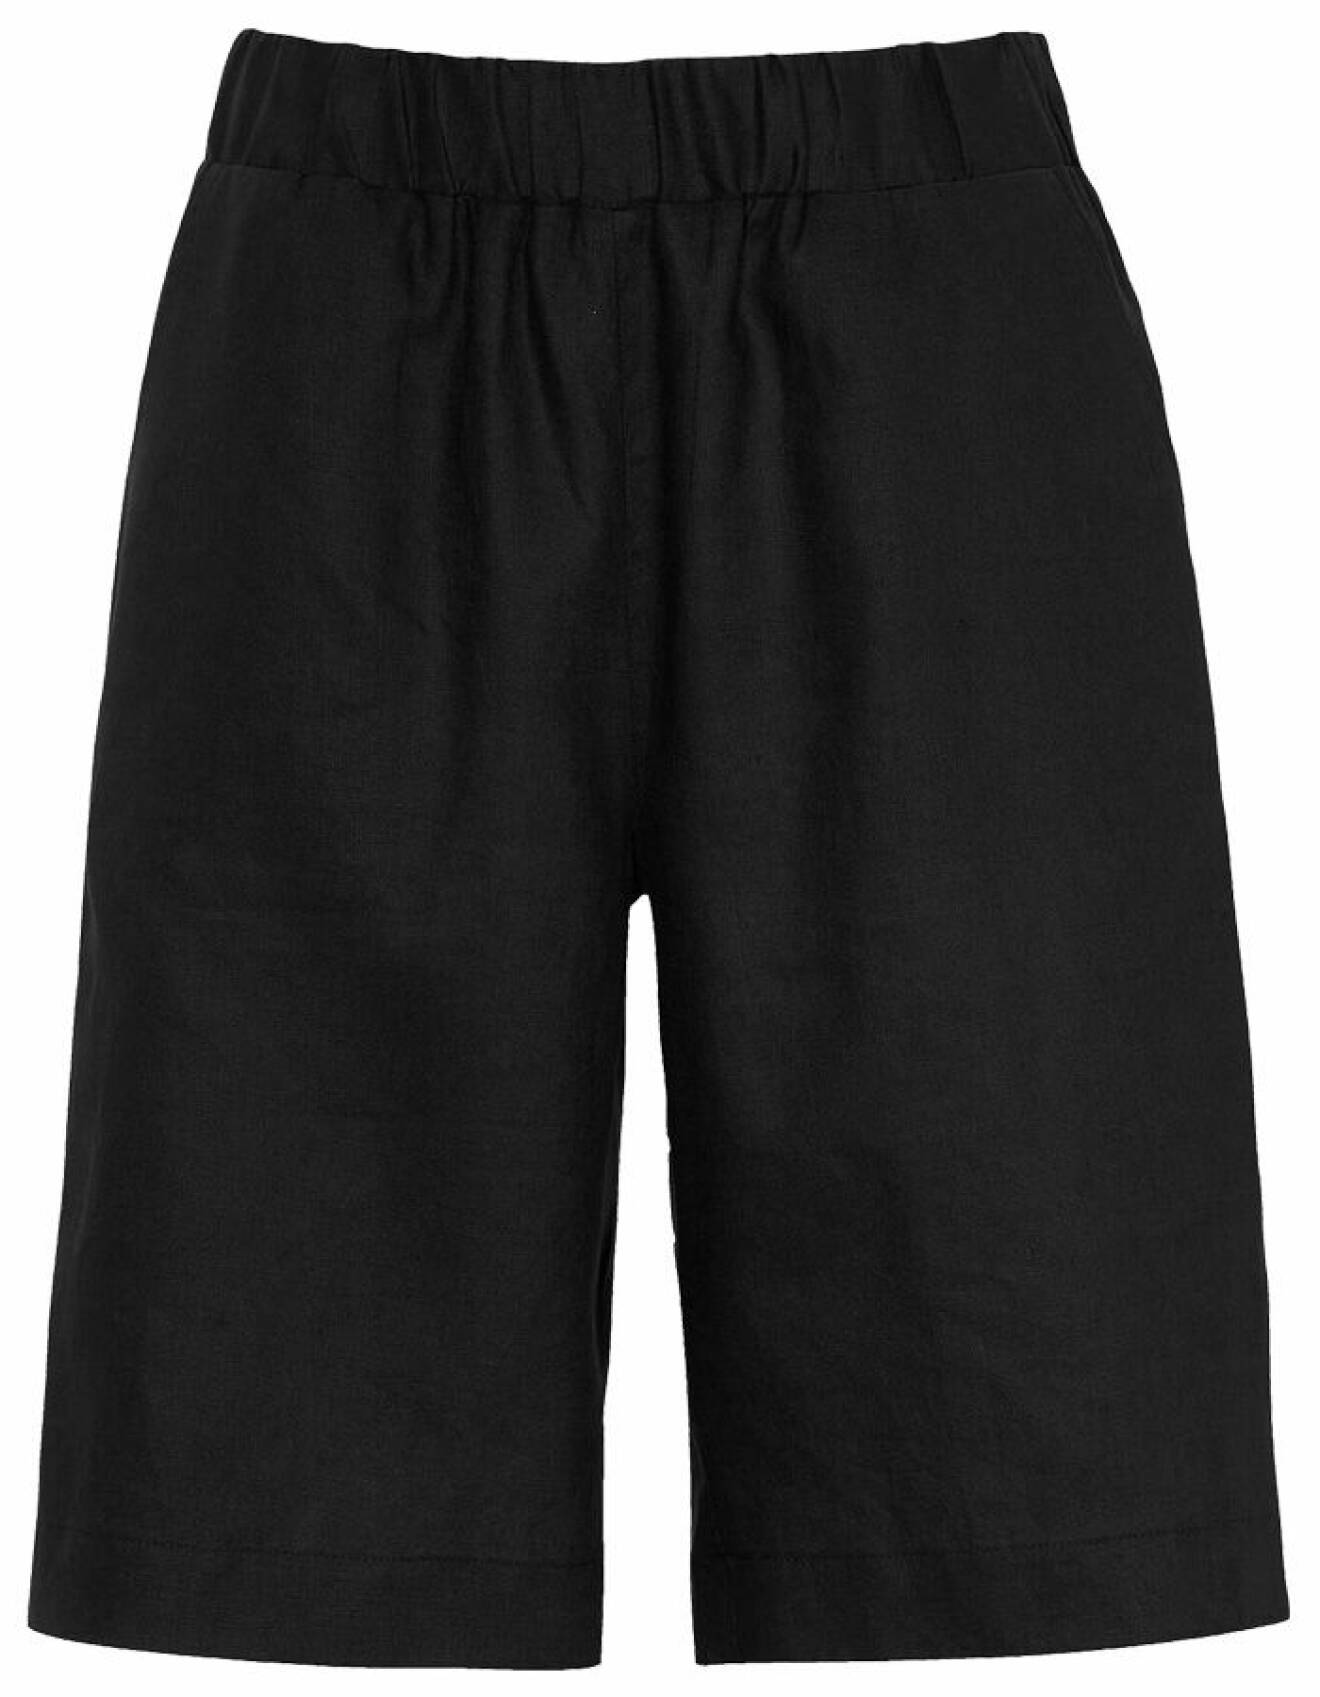 svarta shorts i linne med långa ben för dam från cellbes